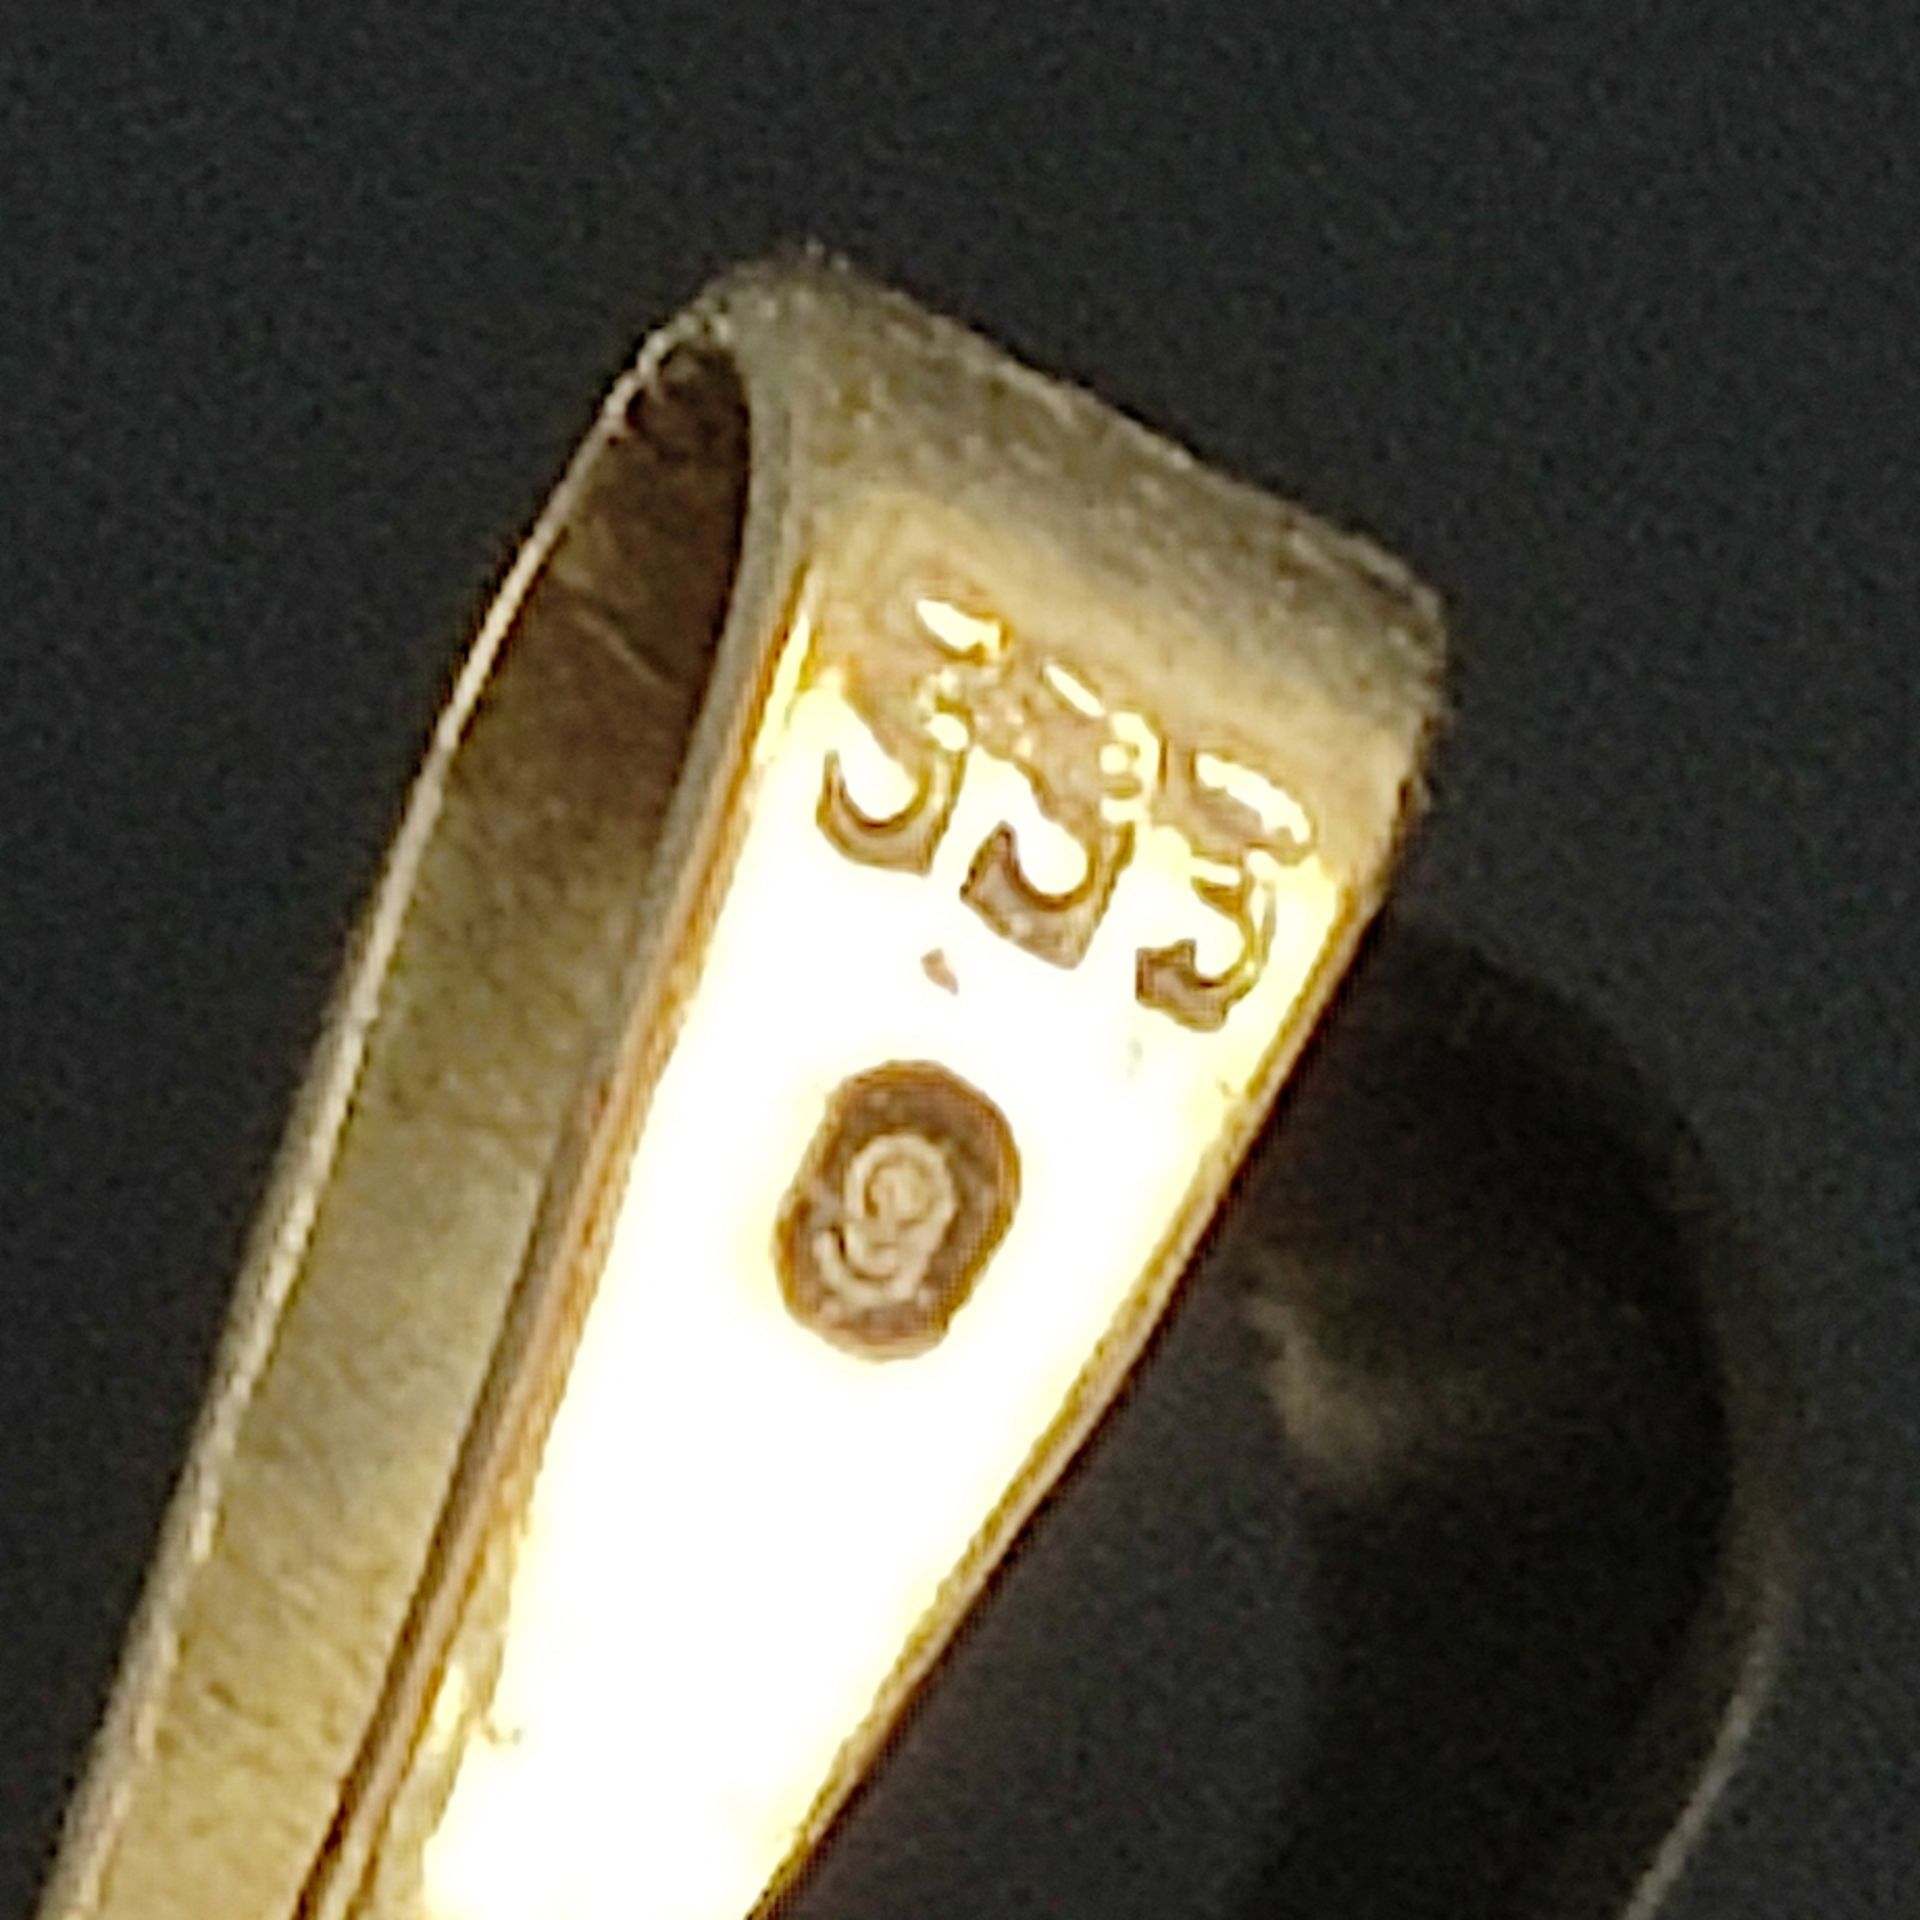 3 Teile Granatschmuck, 333/8K Gelbgold, Gesamtgewicht 16,25g, bestehend aus Armband, im Wechsel run - Bild 4 aus 5